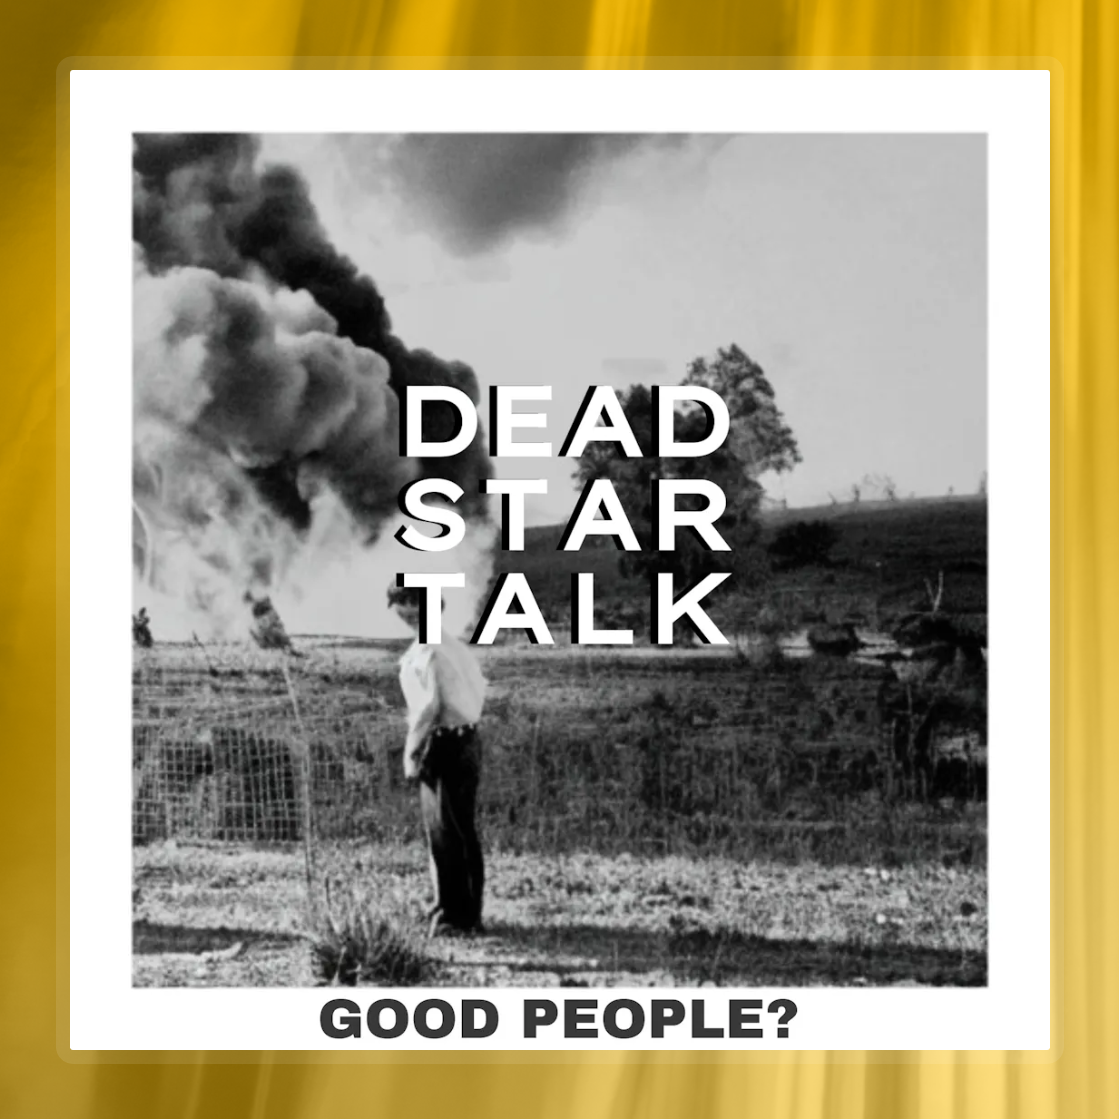 DEAD STAR TALK 'Good People?'